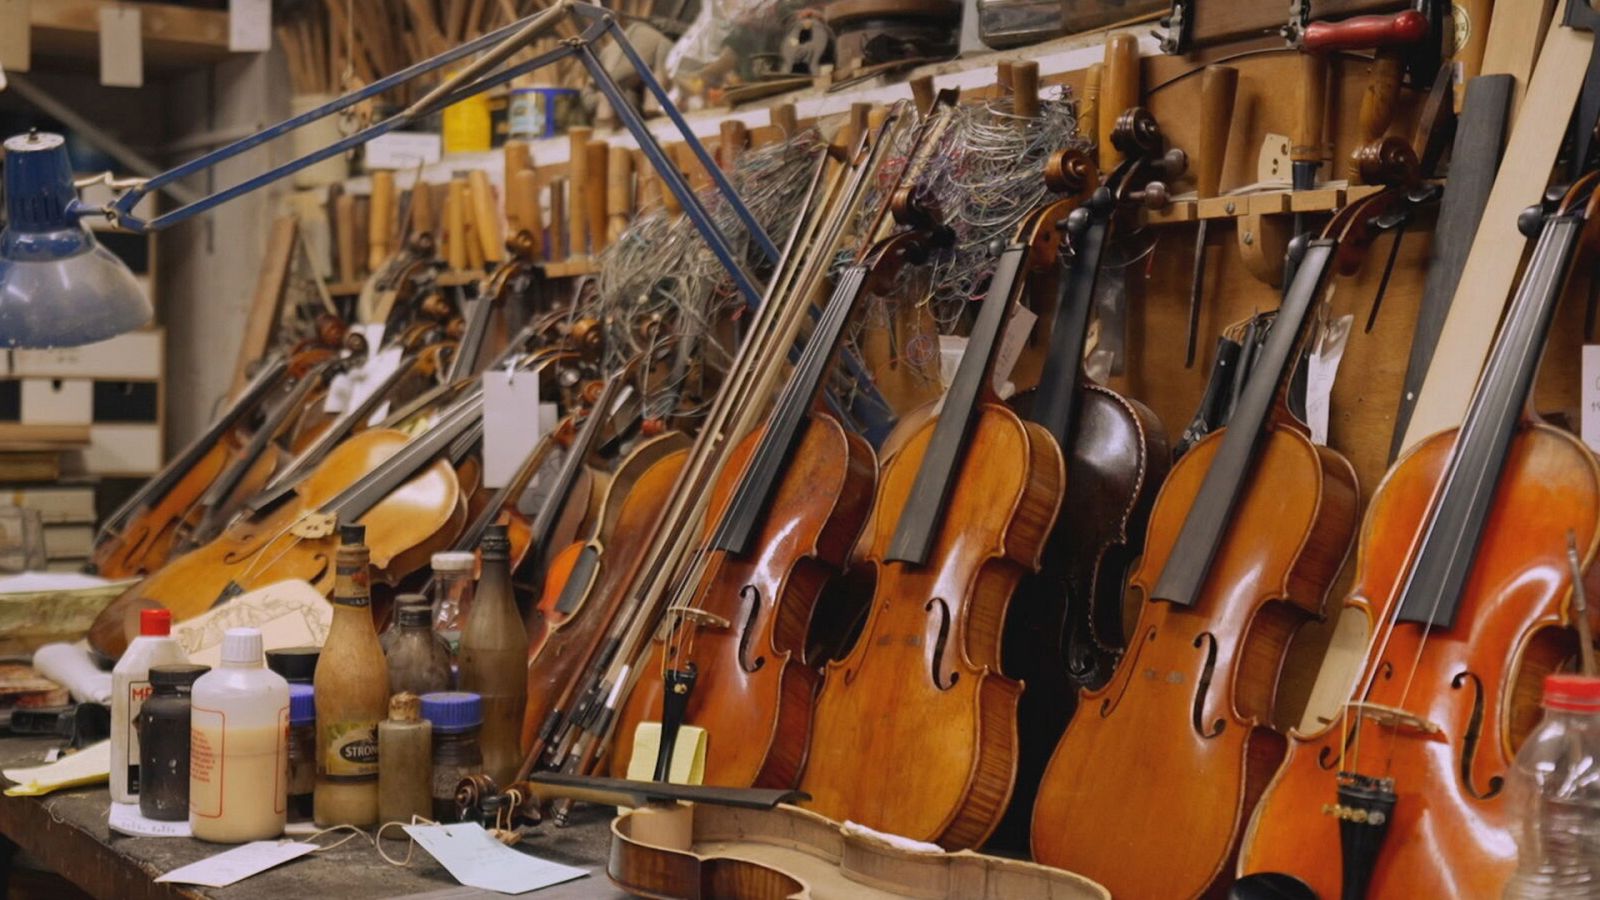 Terminal electo peor Los Violines de la Esperanza", los violines del Holocausto